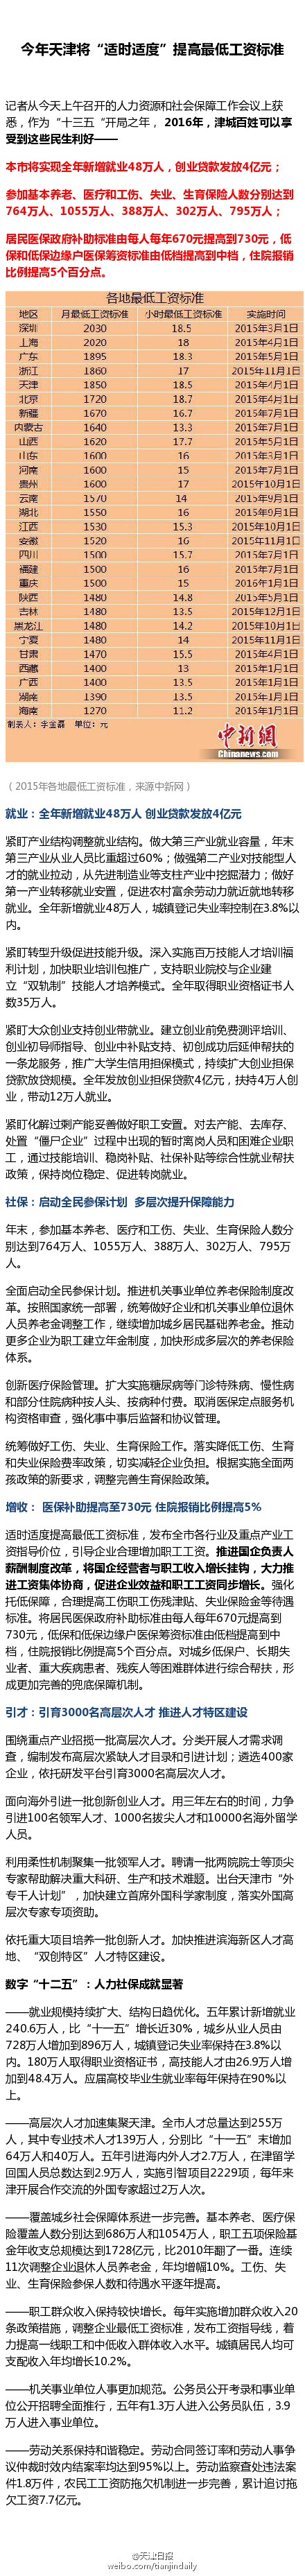 今年天津“适时适度”提高较低工资标准